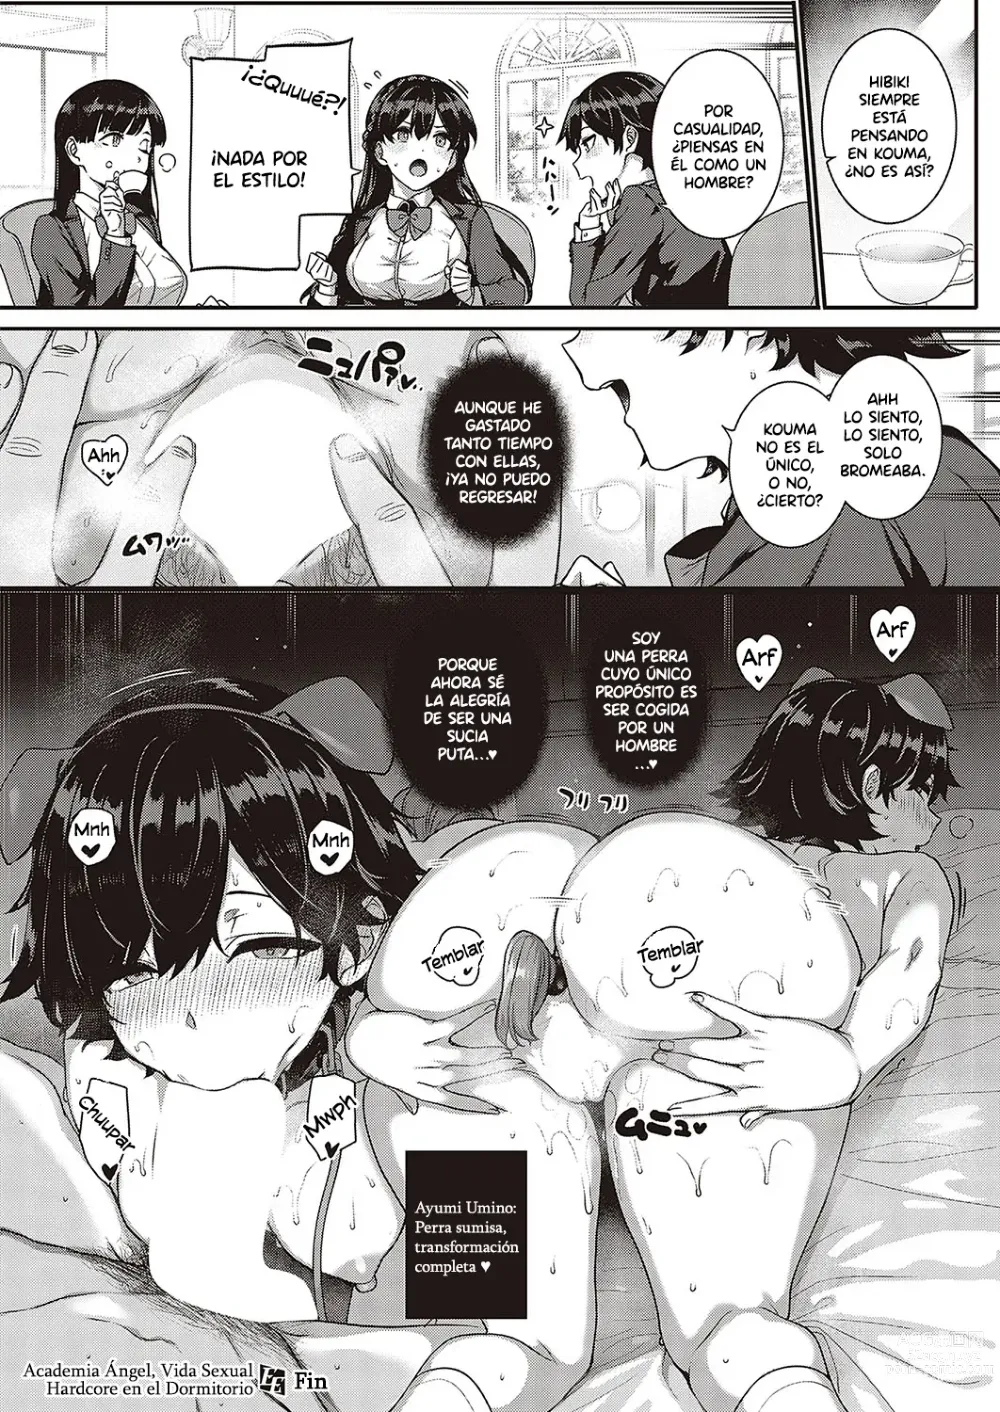 Page 221 of manga Amatsuka Gakuen no Ryoukan Seikatsu Ch. 1-2, 3.5-5.8